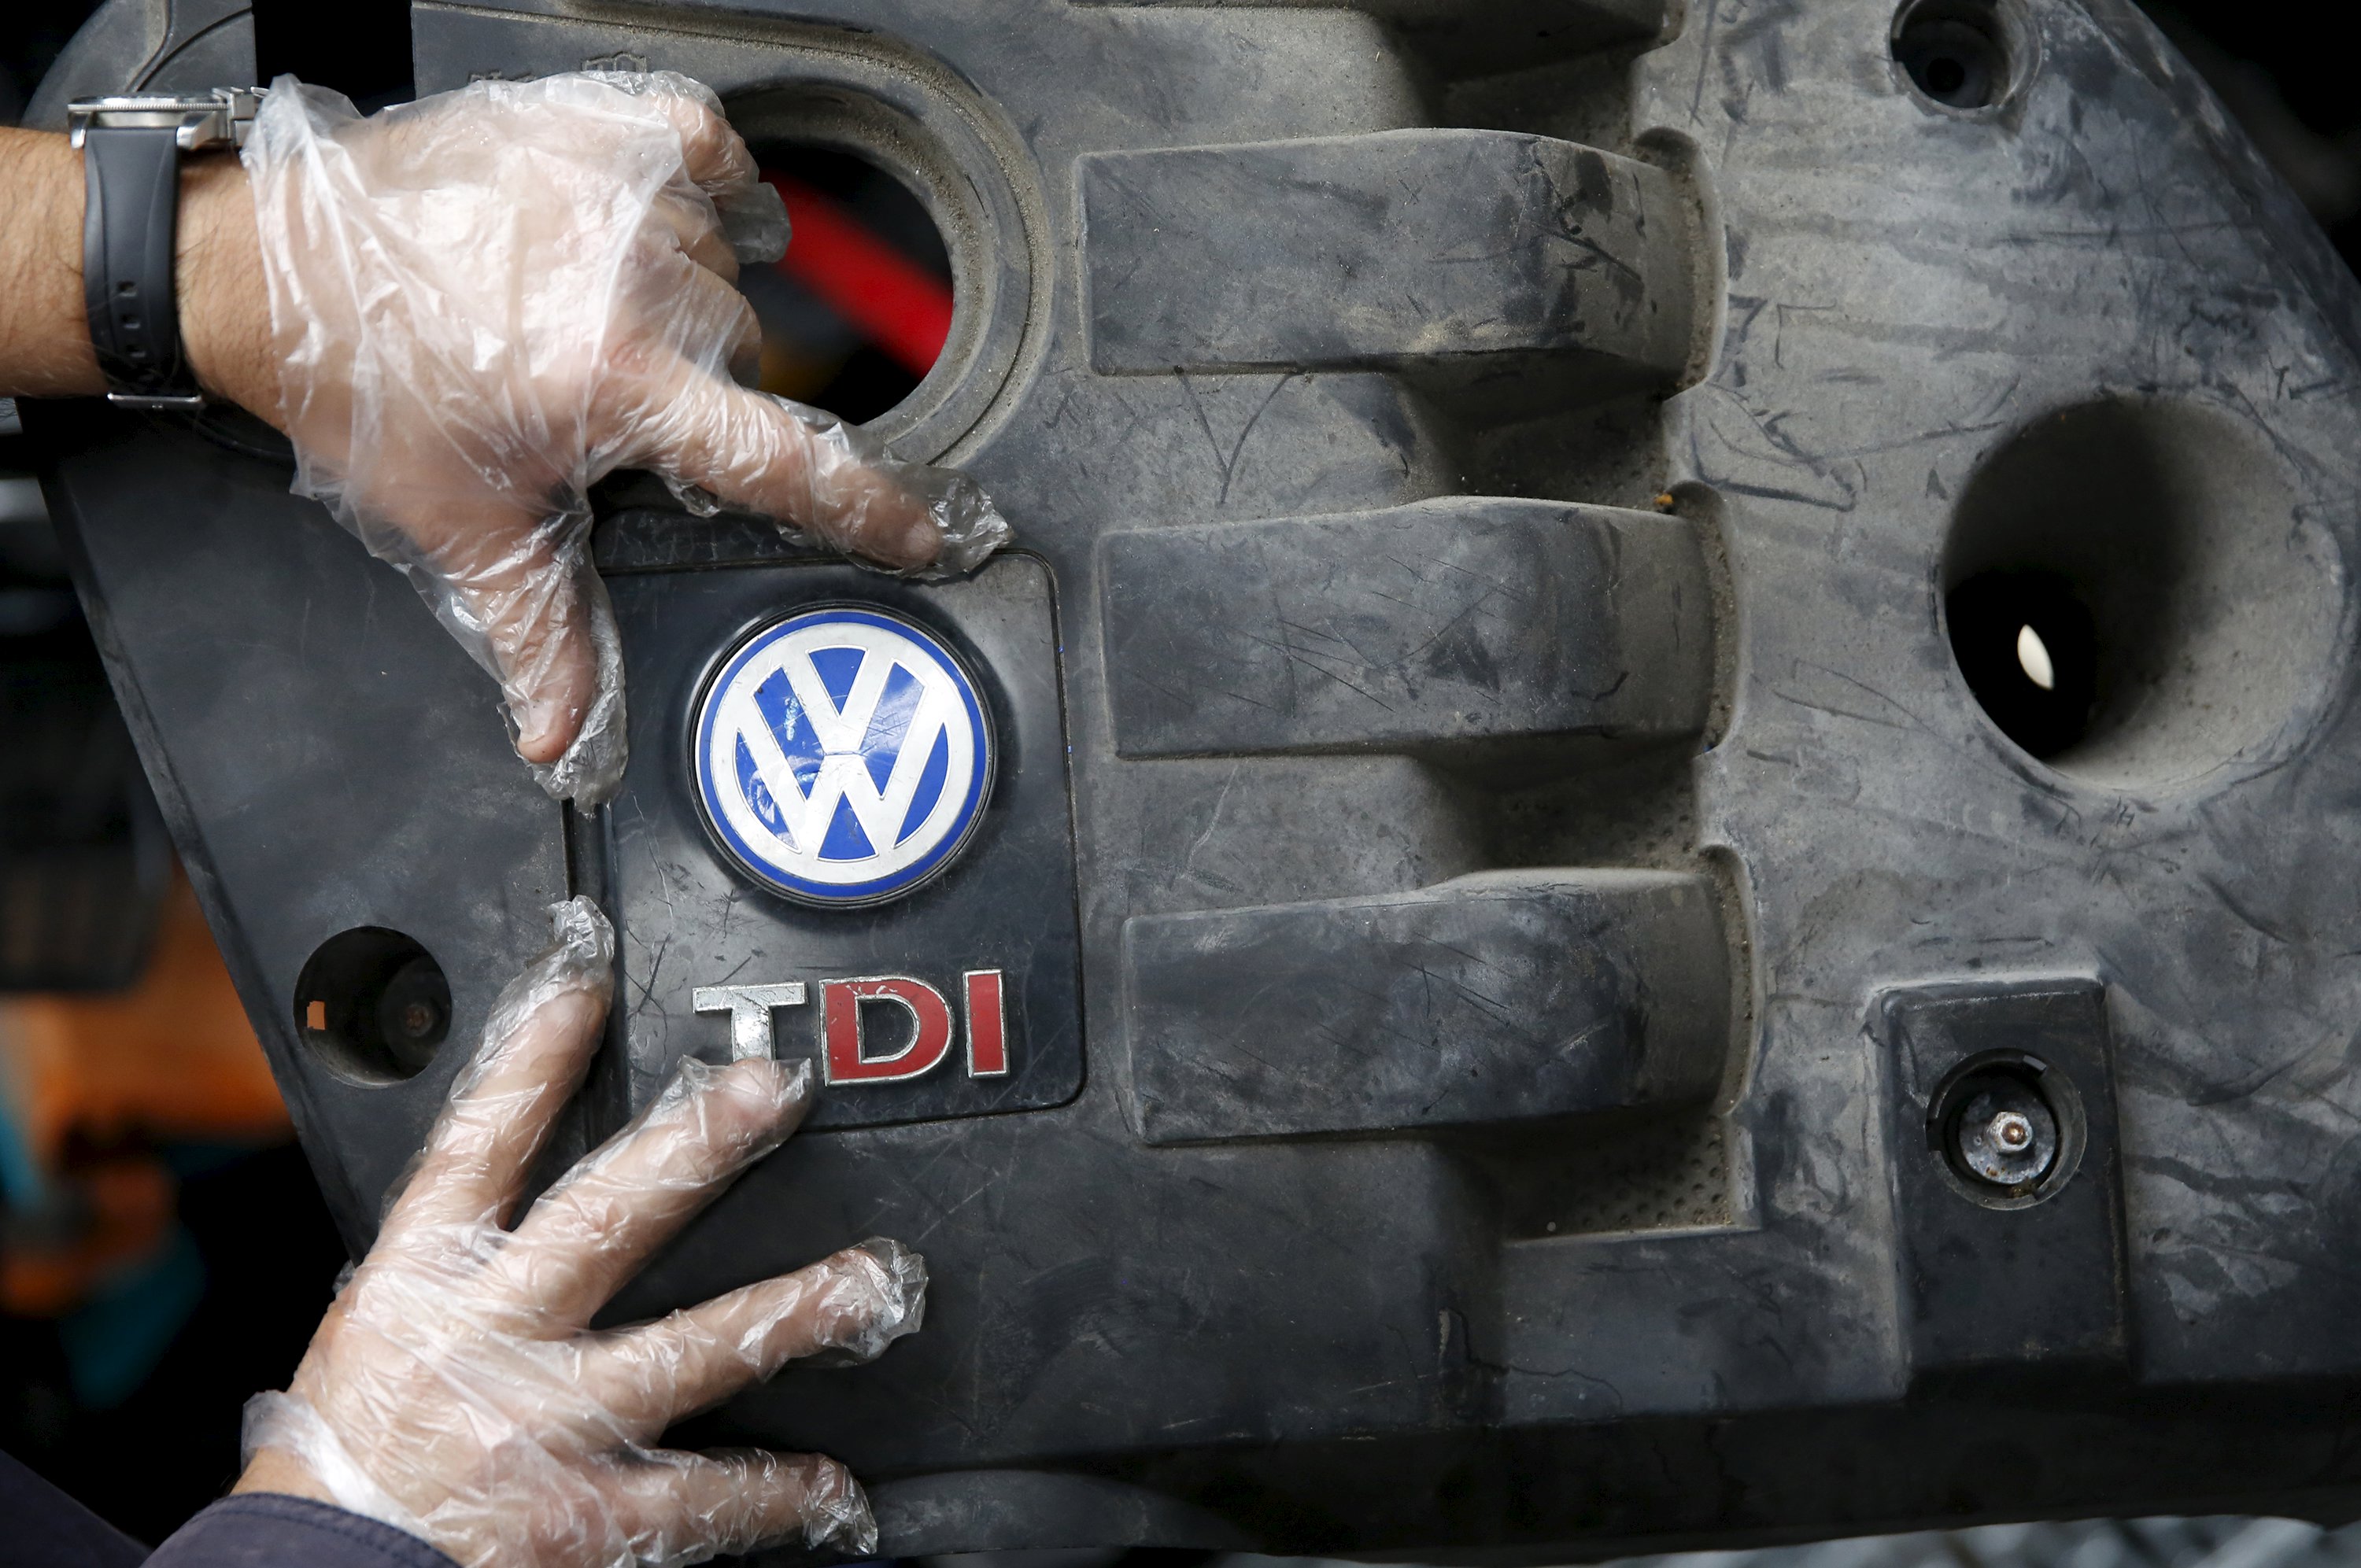 Σε 1,8 εκ. ανέρχονται τα επαγγελματικά αυτοκίνητα VW που εμπλέκονται στο dieselgate -Σε 700.000 τα Seat